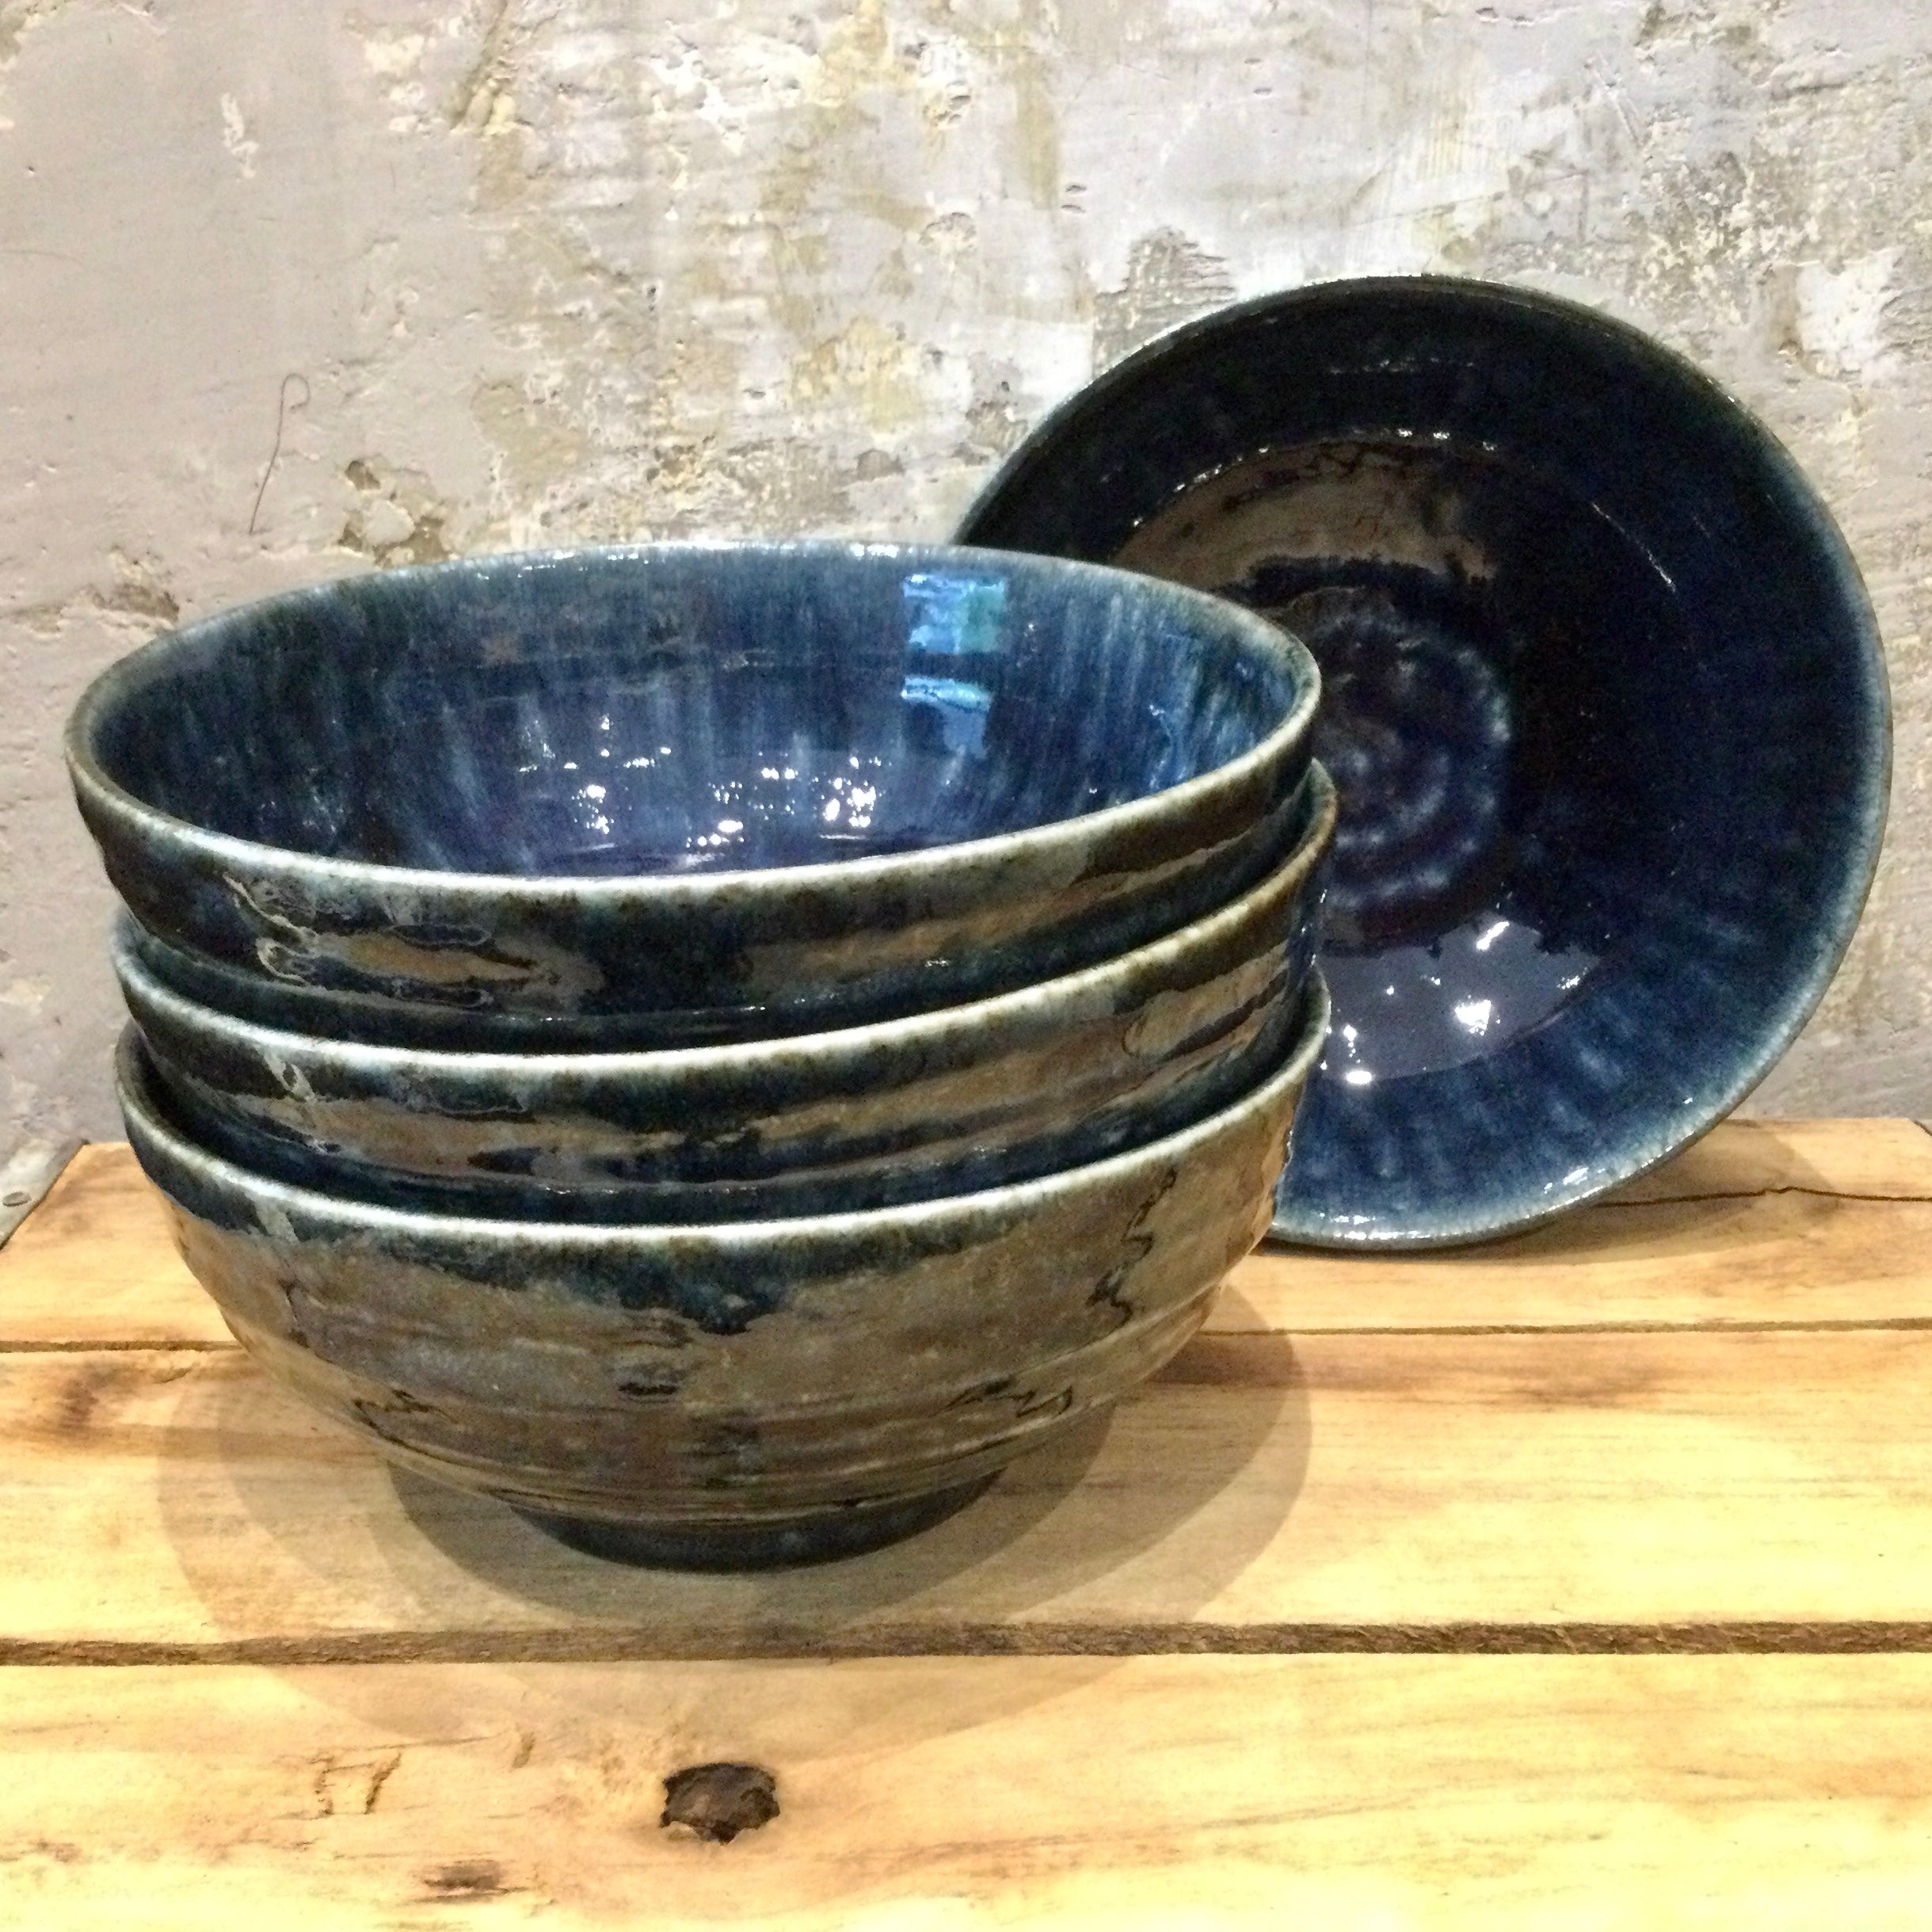 Iroyu Blue  Large Bowl